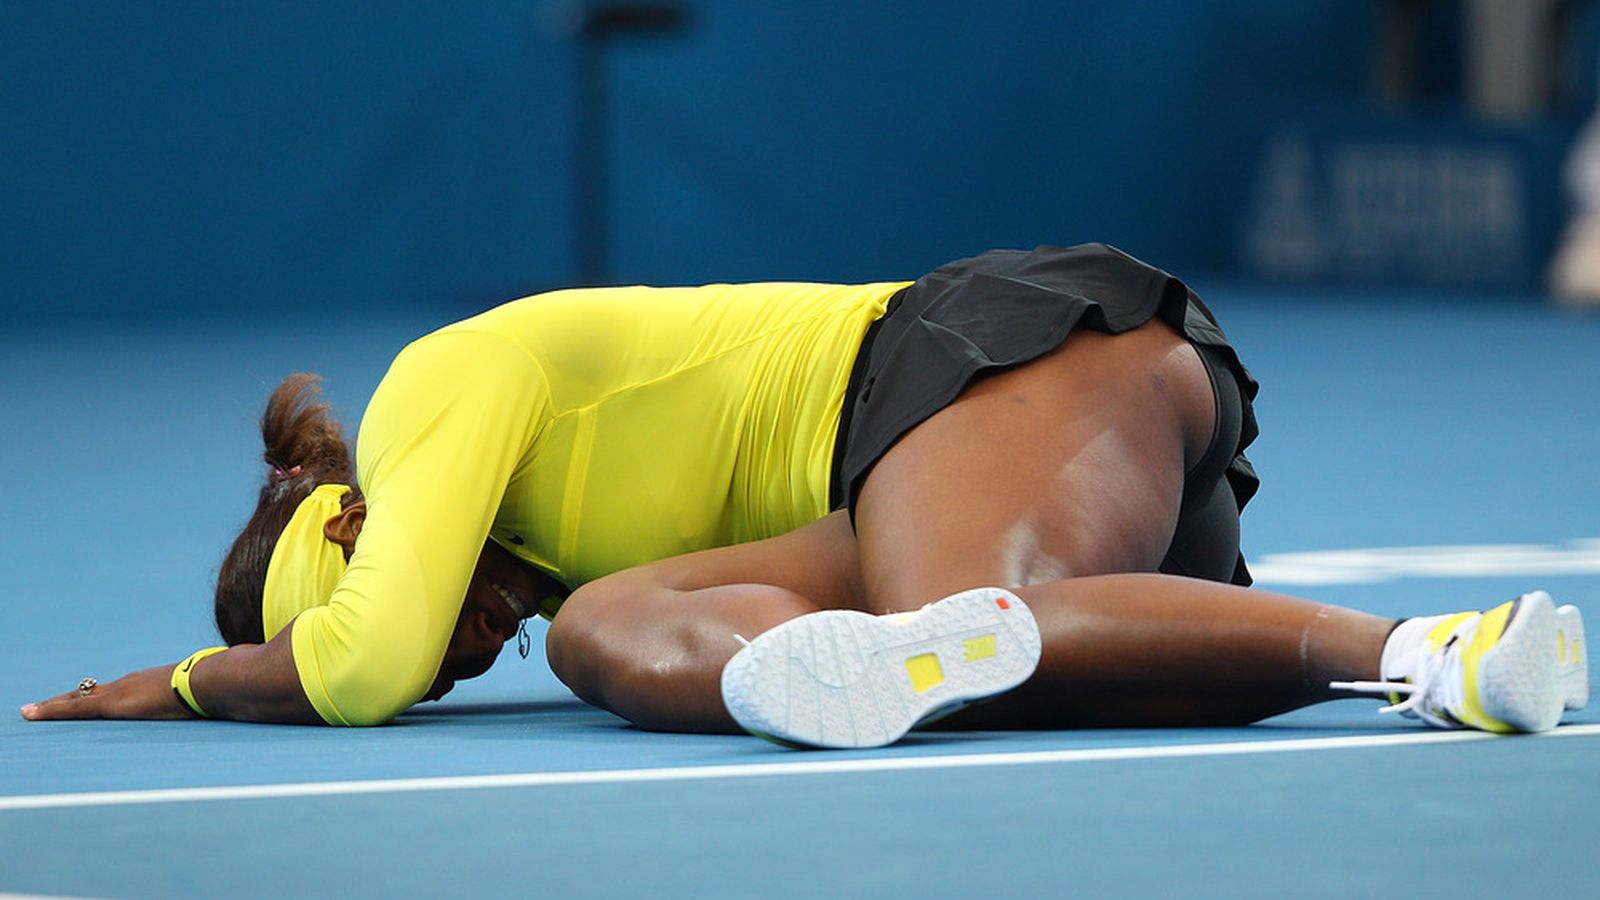 Brisbane Open 2012: Serena Williams Injures Ankle, Still Wins